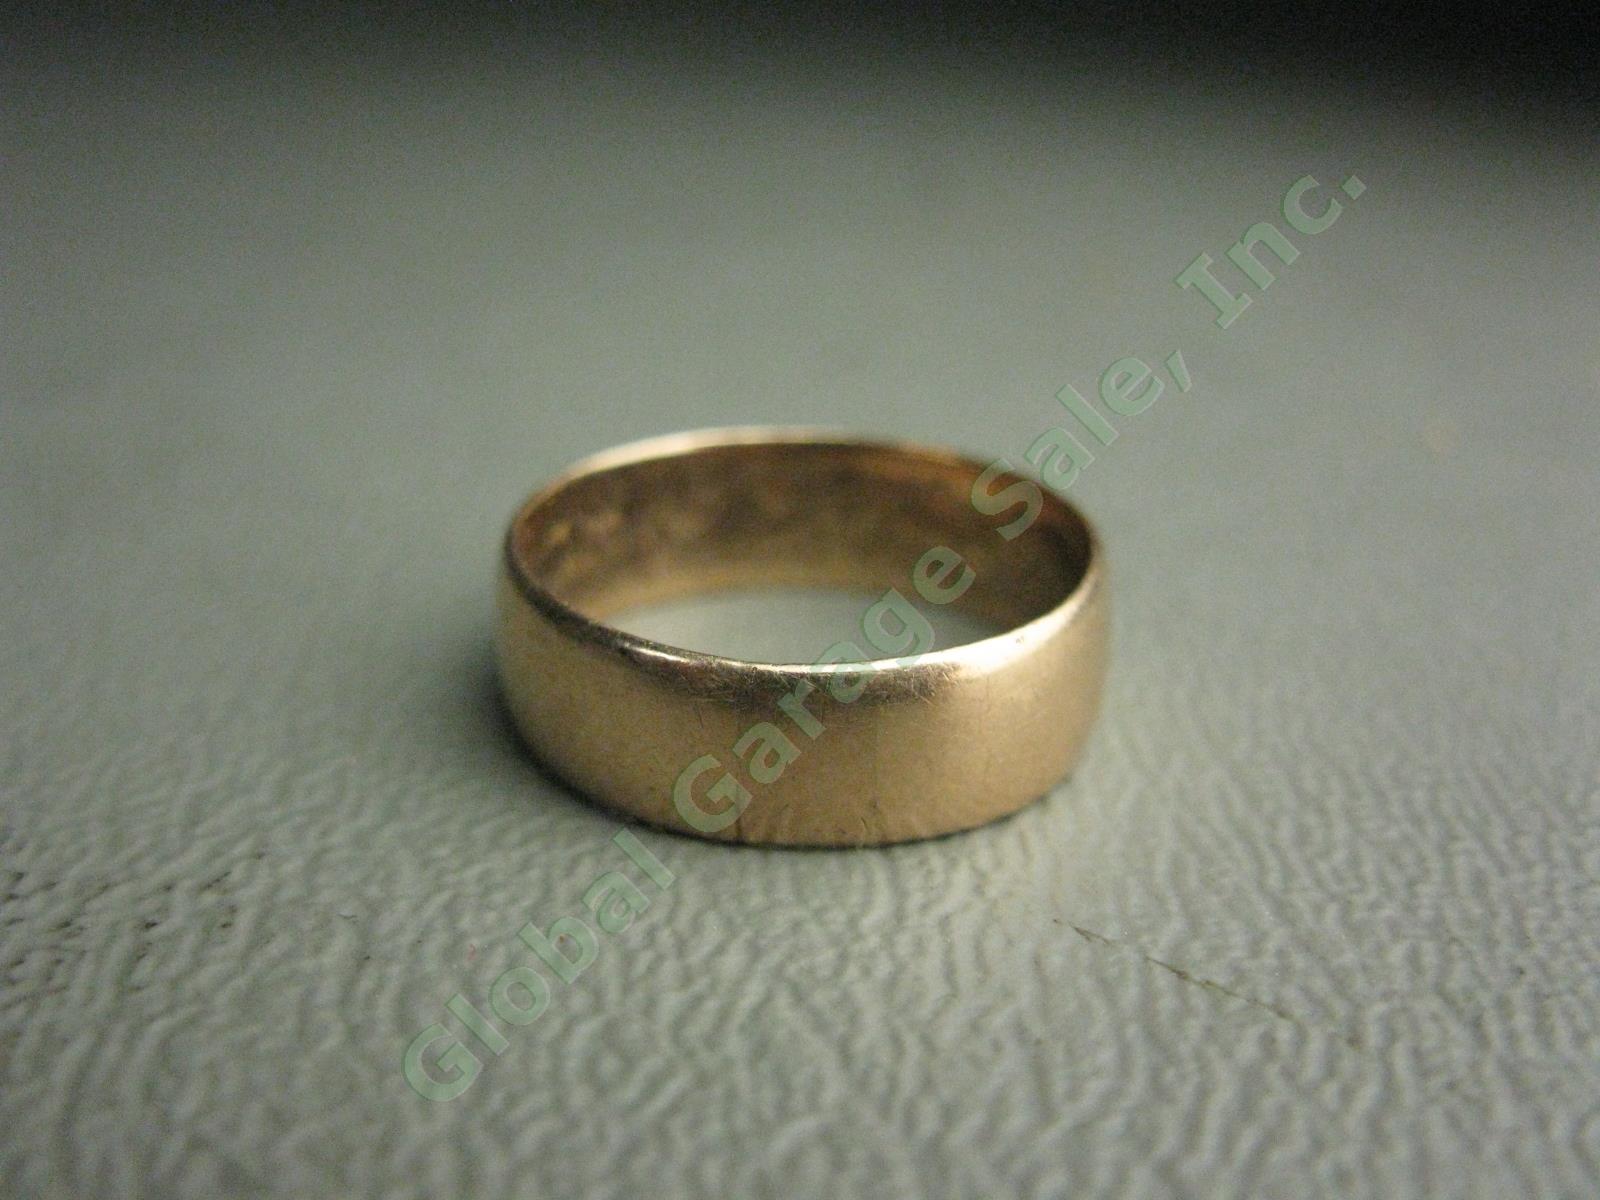 Antique 18K 18 Karat Rose Gold Ring Wedding Band 3.5 Grams No Reserve Price!! 1